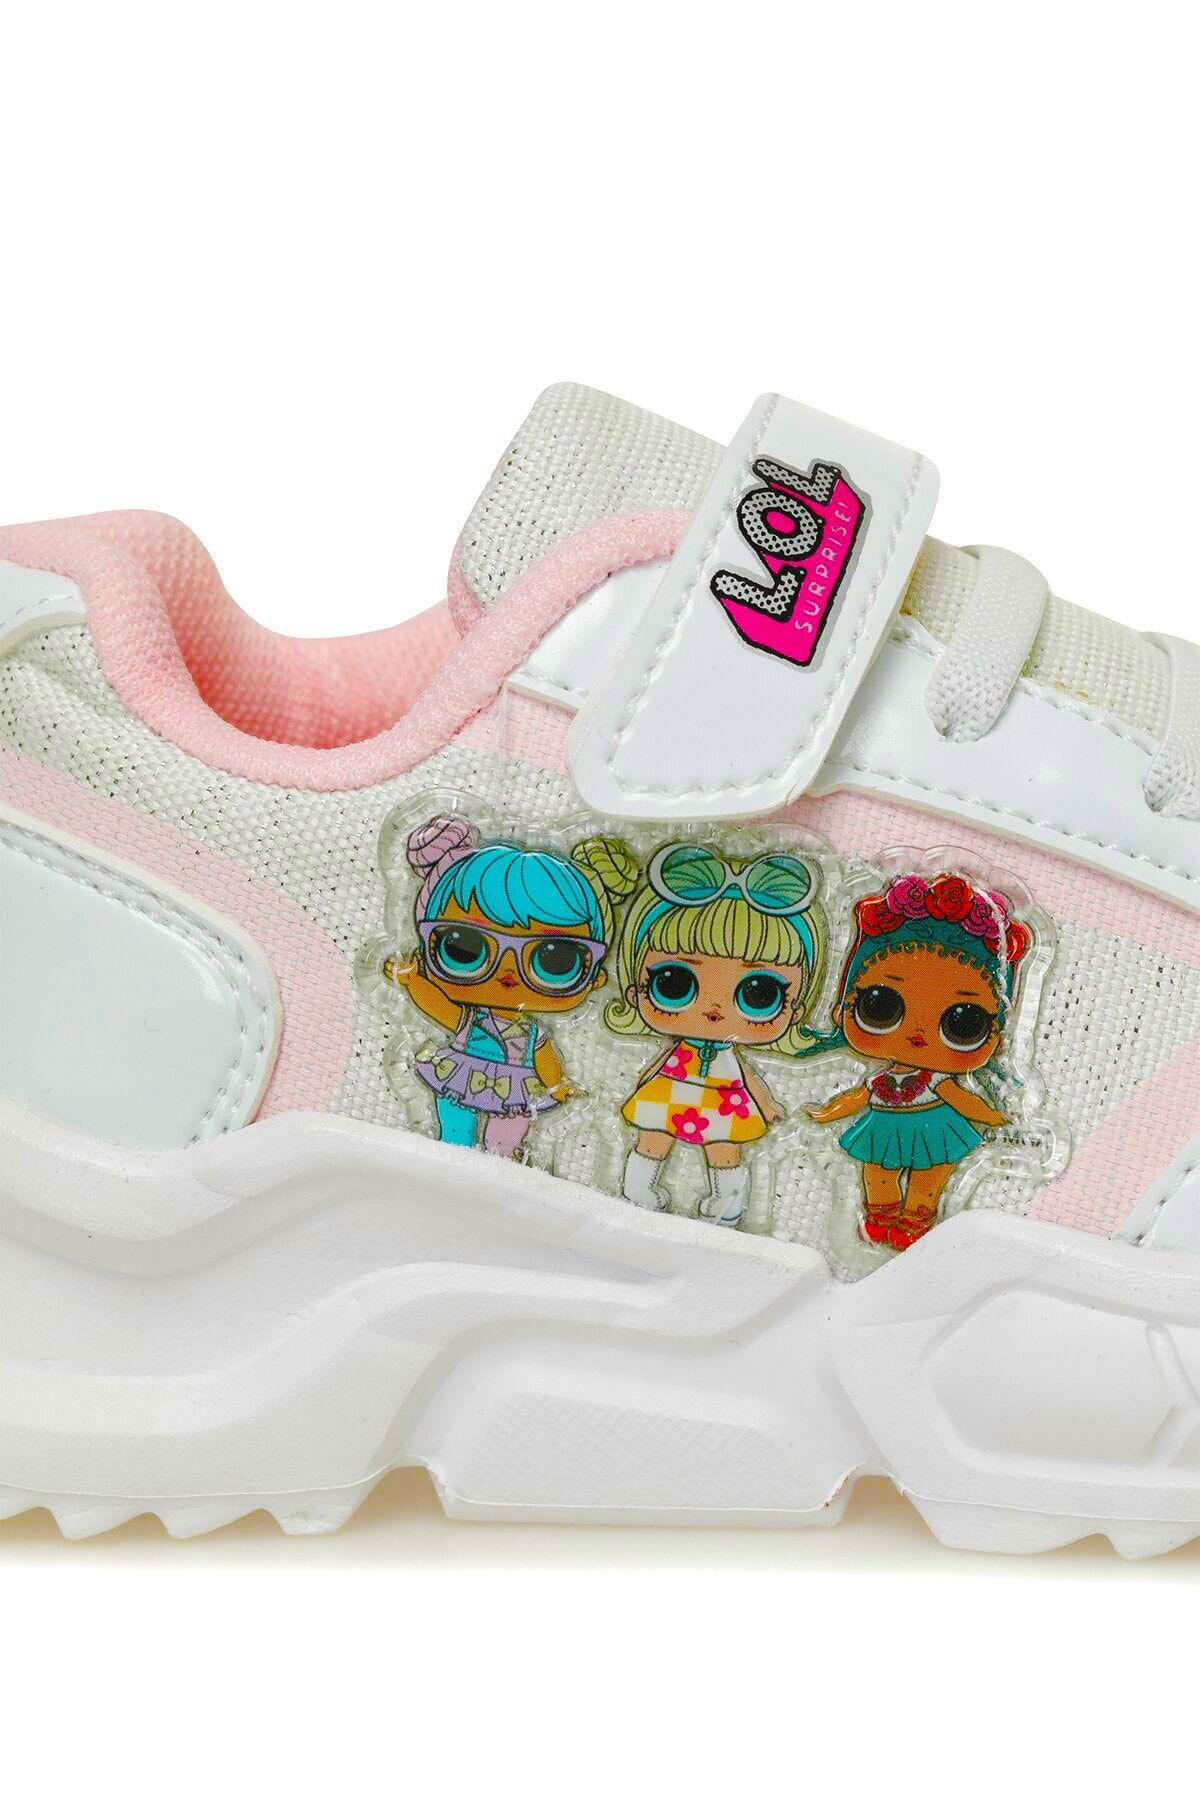 Lol Yazlık Kız Çocuk Orjinal Hafif Nefes Alabilen Günlük Bantlı Sneaker Spor Ayakkabı Girl Child Shoes